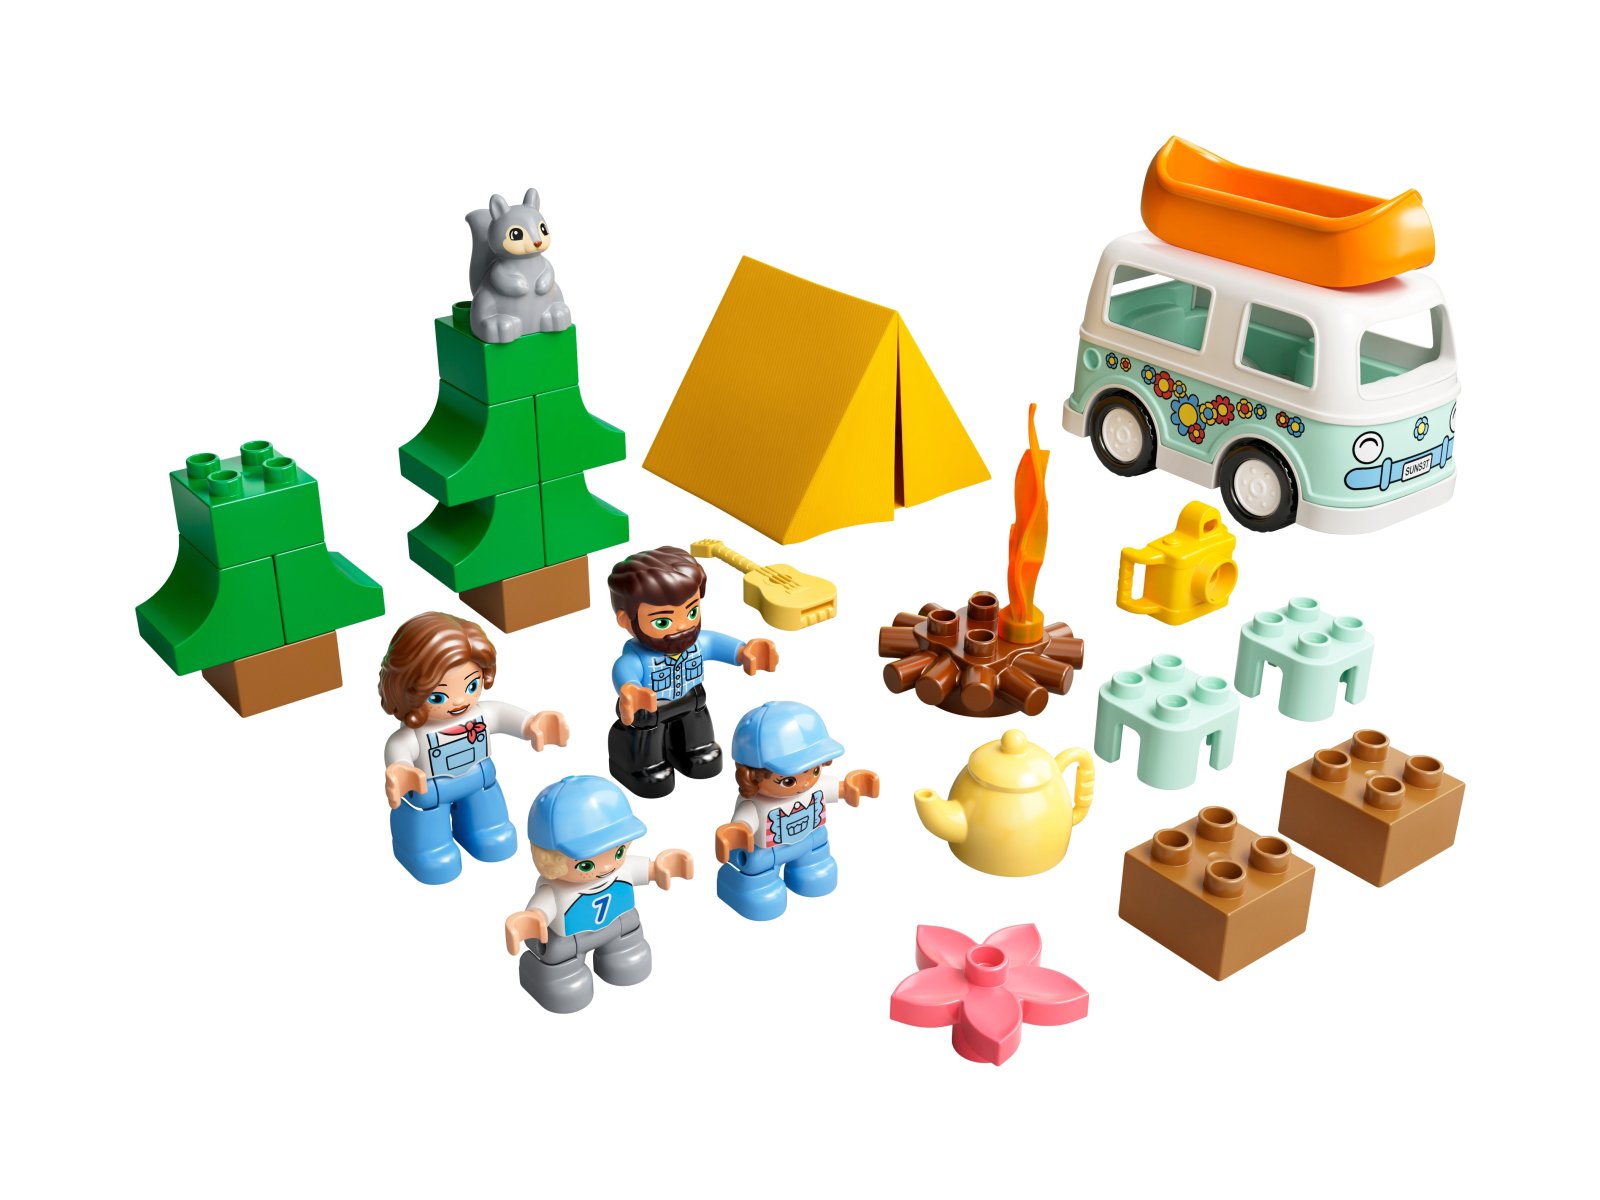 LEGO Duplo Rodzinne biwakowanie 10946